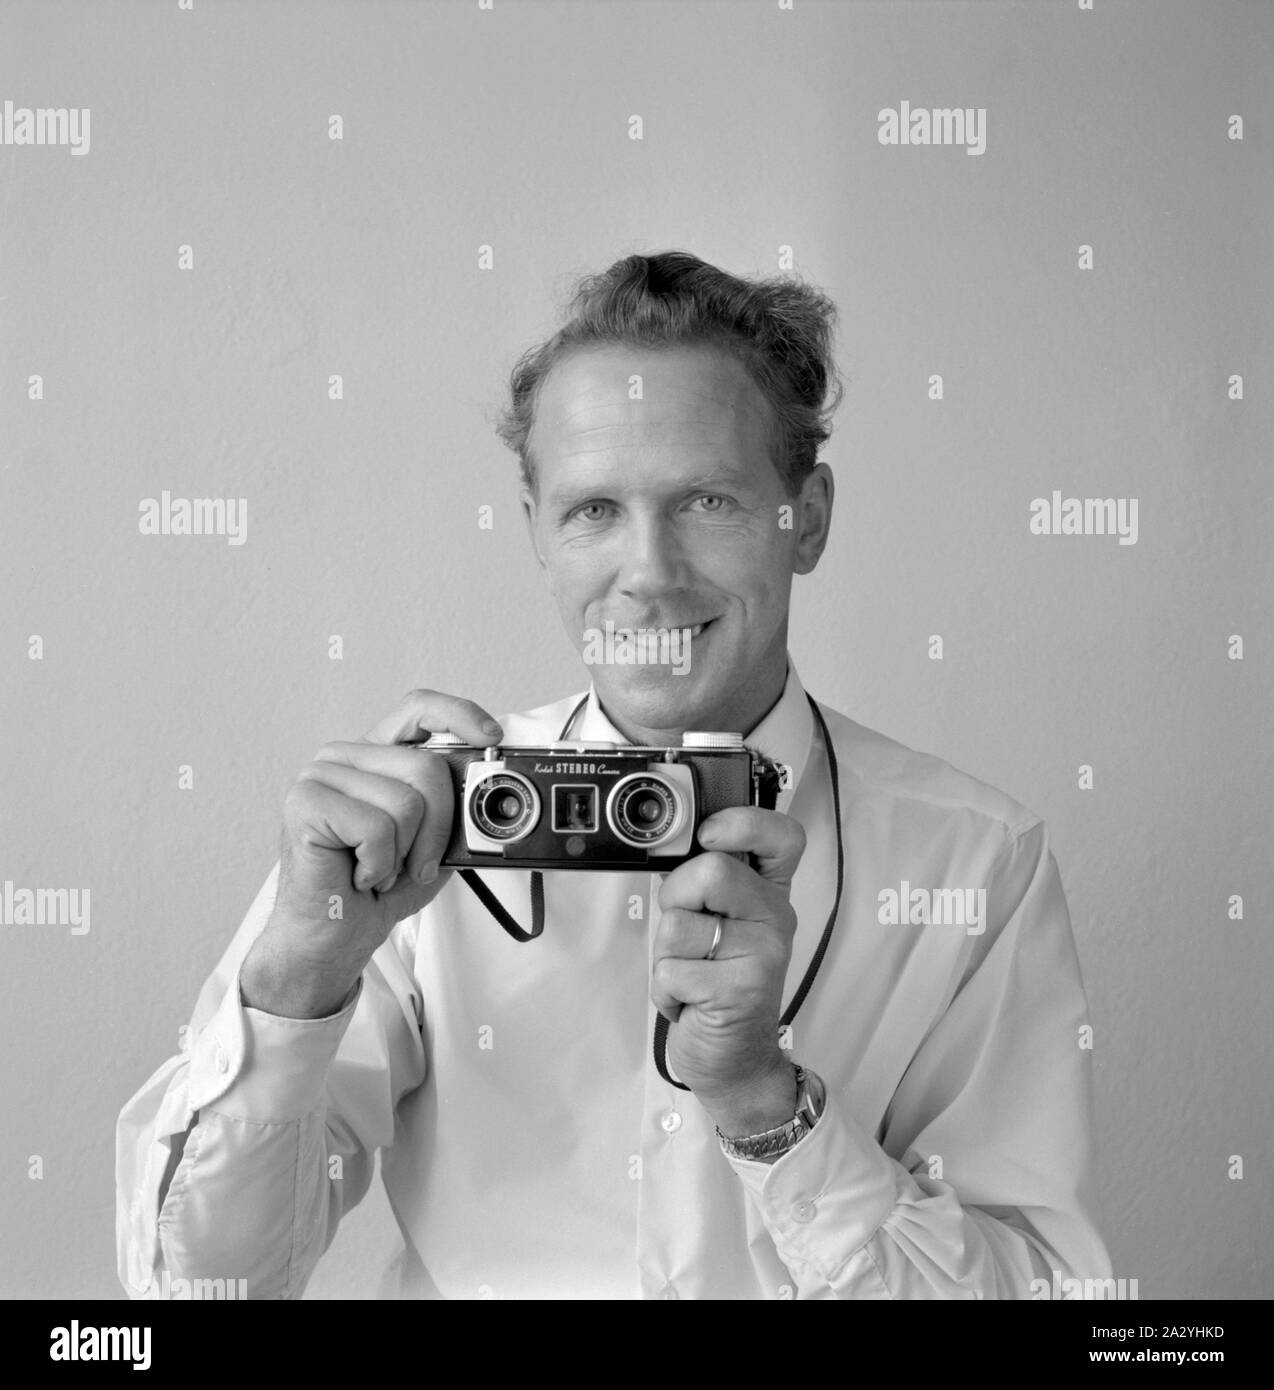 L'histoire de l'appareil photo. Un homme avec une caméra stéréo Kodak. Une  caméra stéréo 35 mm produites entre 1954 et 1959. L'appareil photo a pris  deux coups de la scène, et les